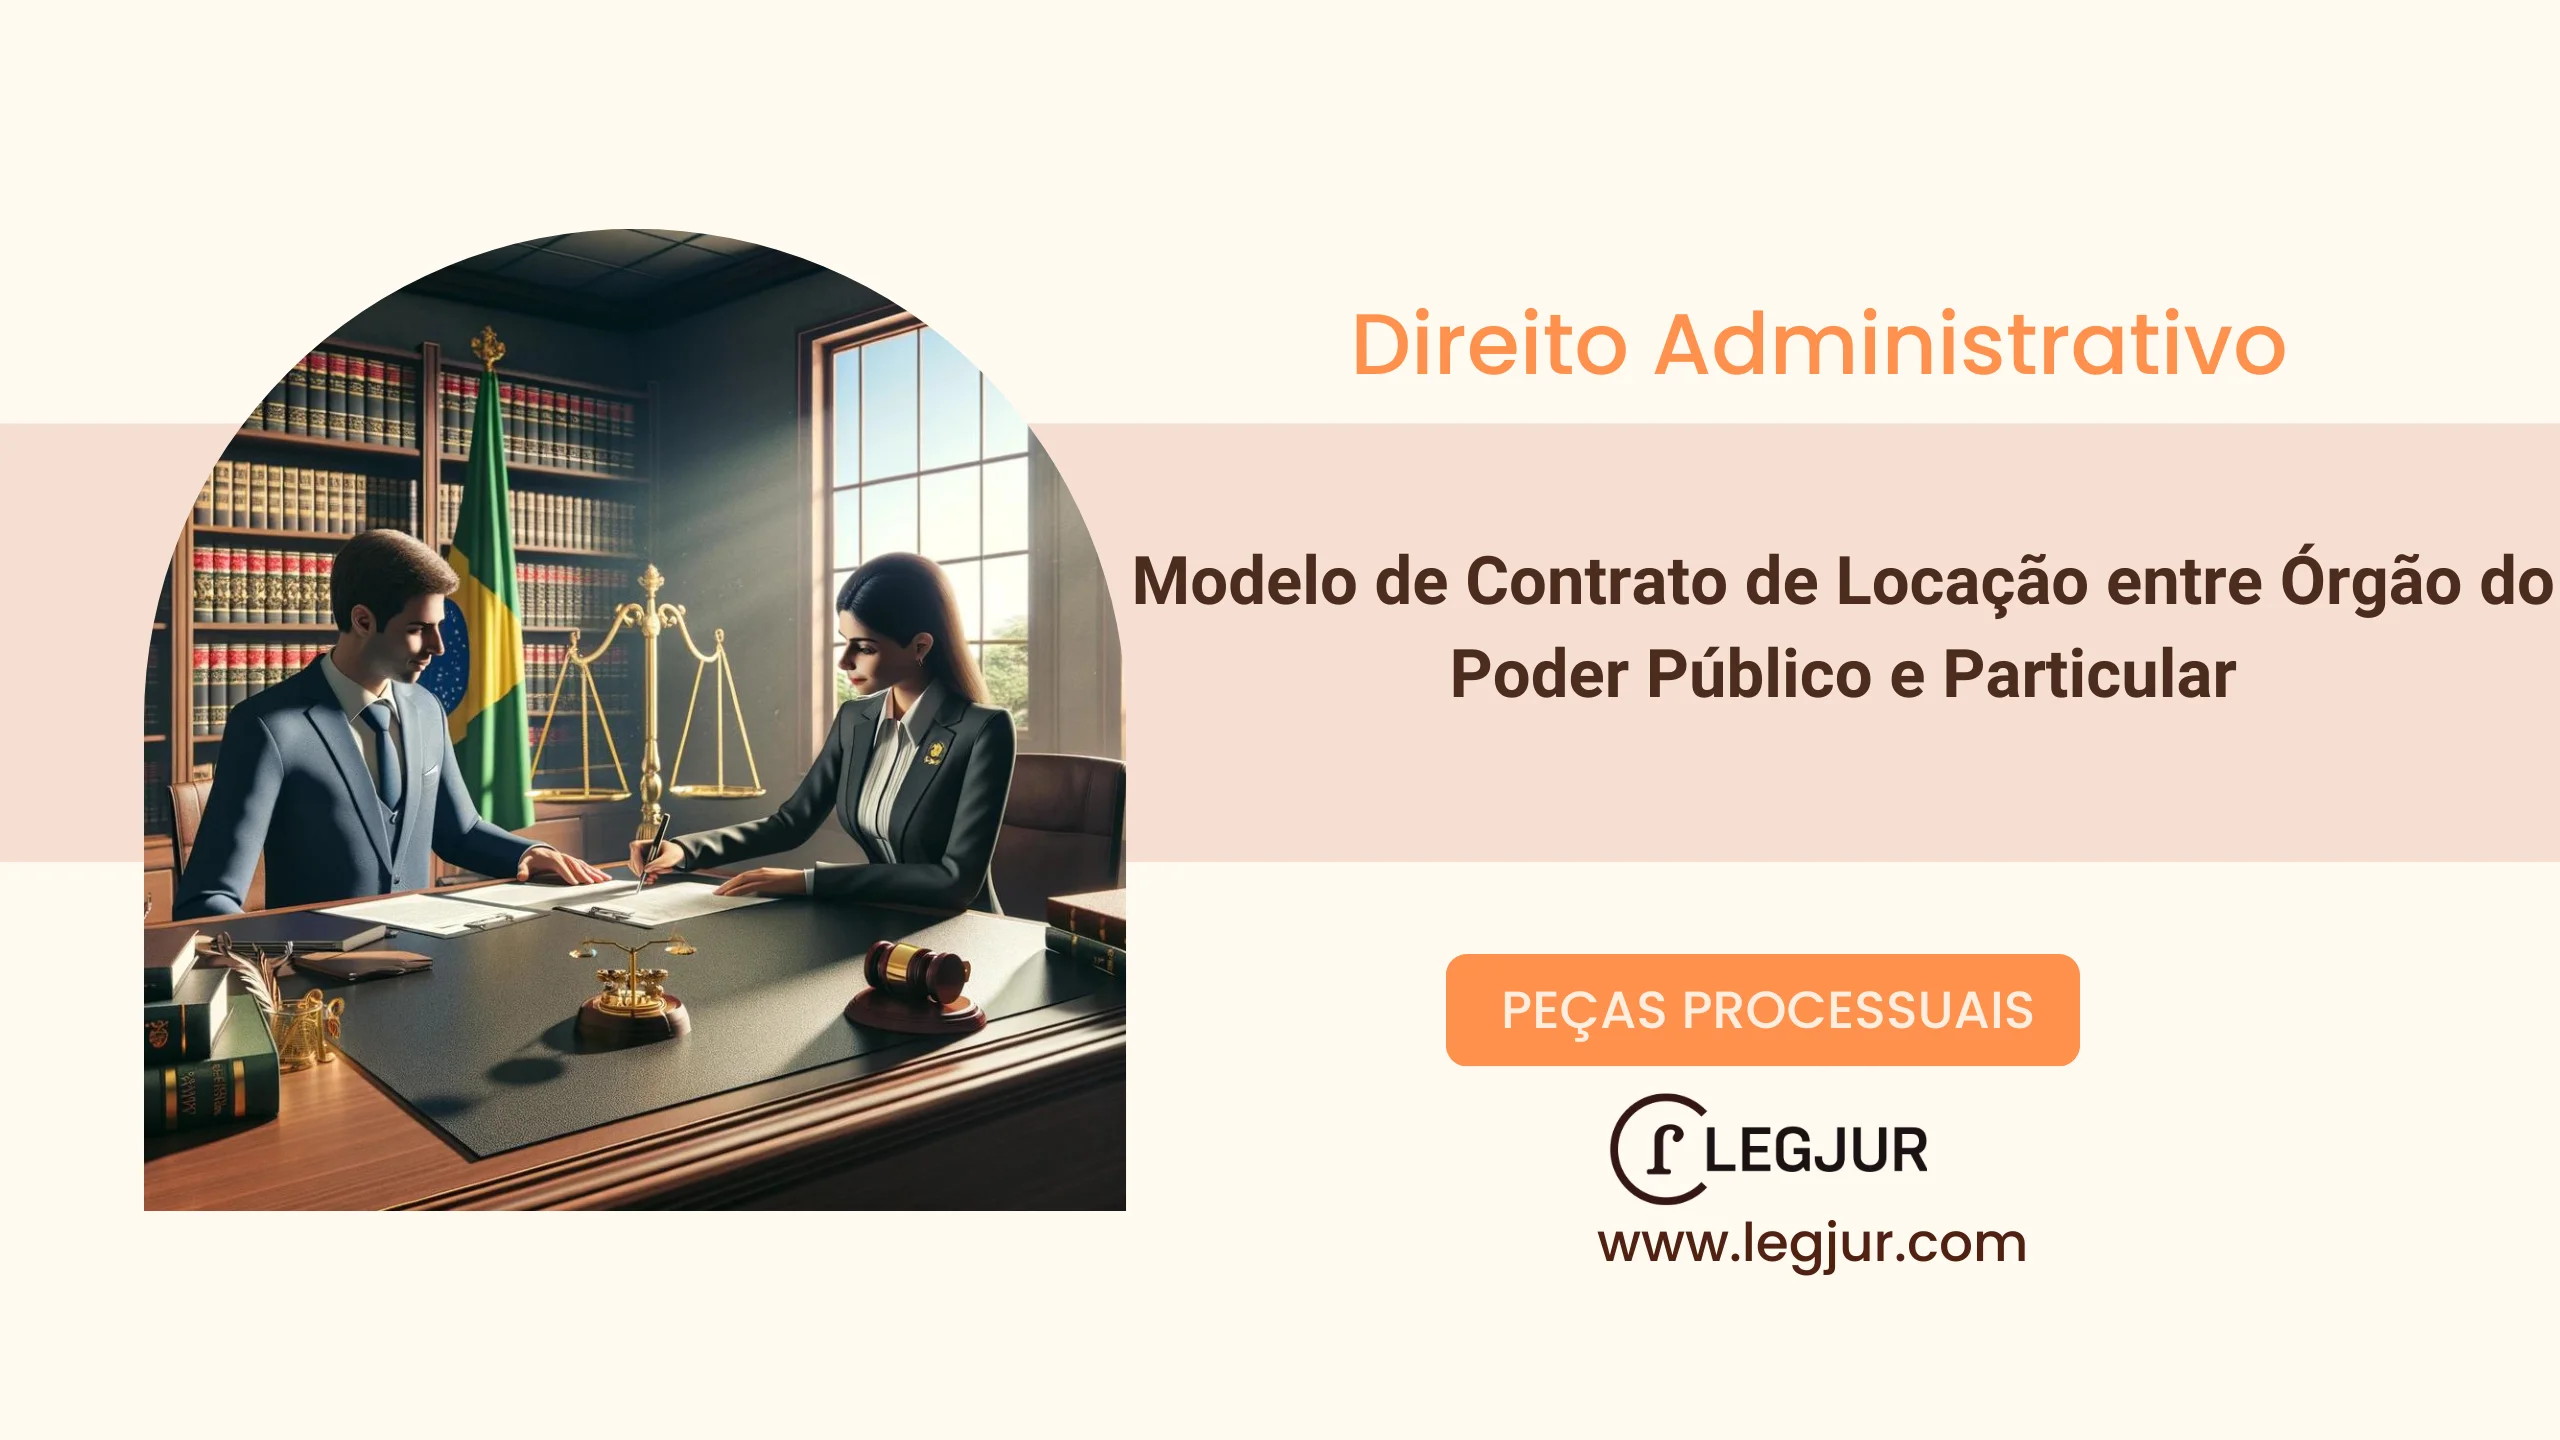 Modelo de Contrato de Locação entre Órgão do Poder Público e Particular